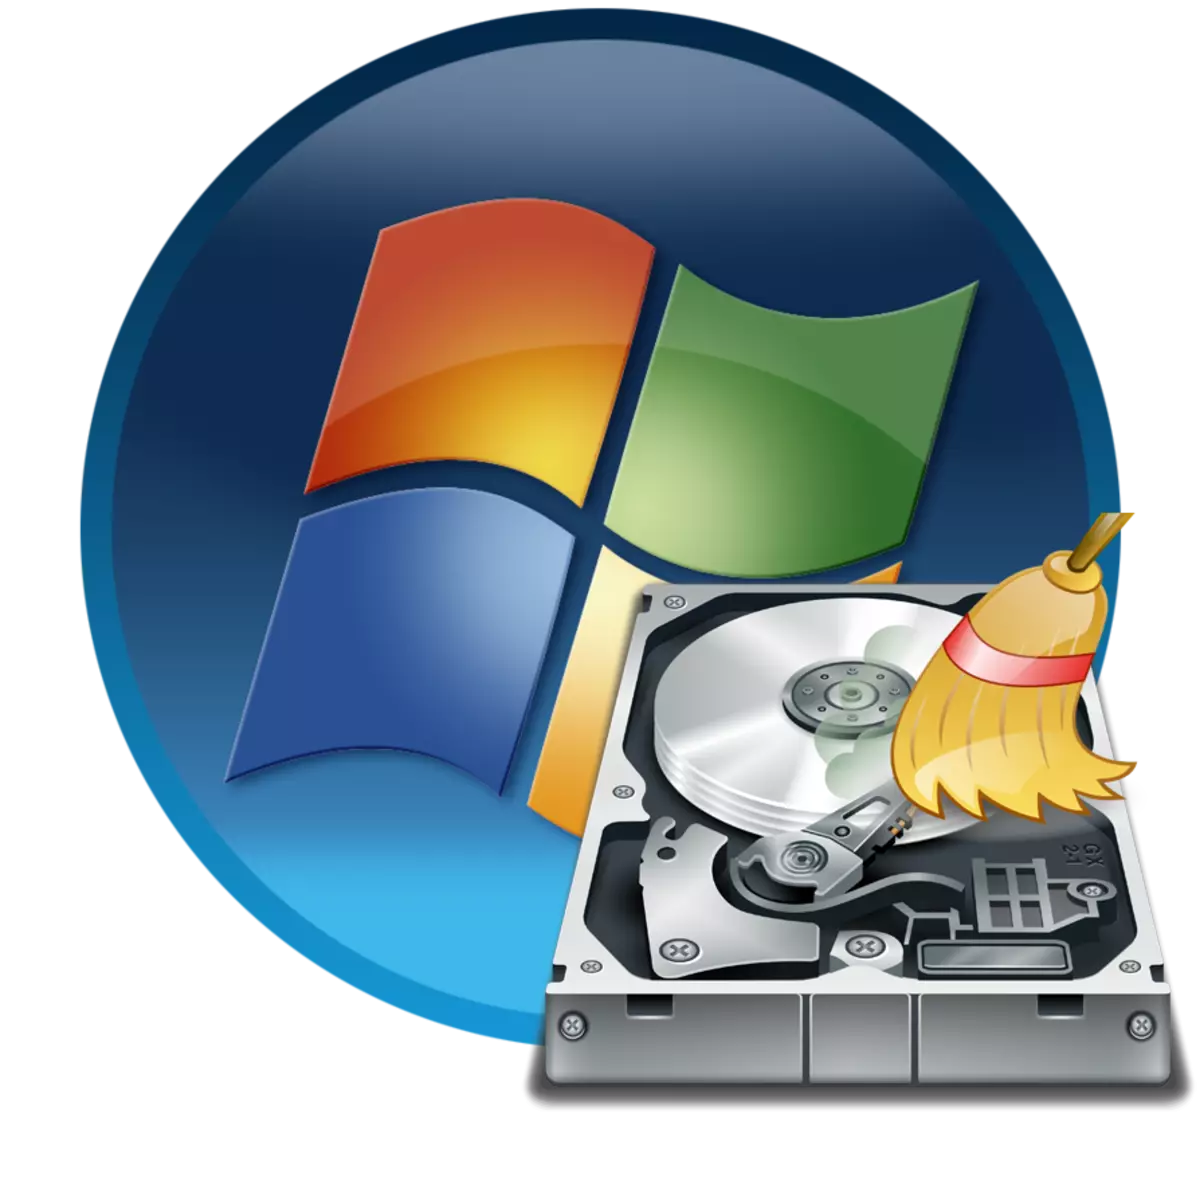 Formatação do disco no Windows 7